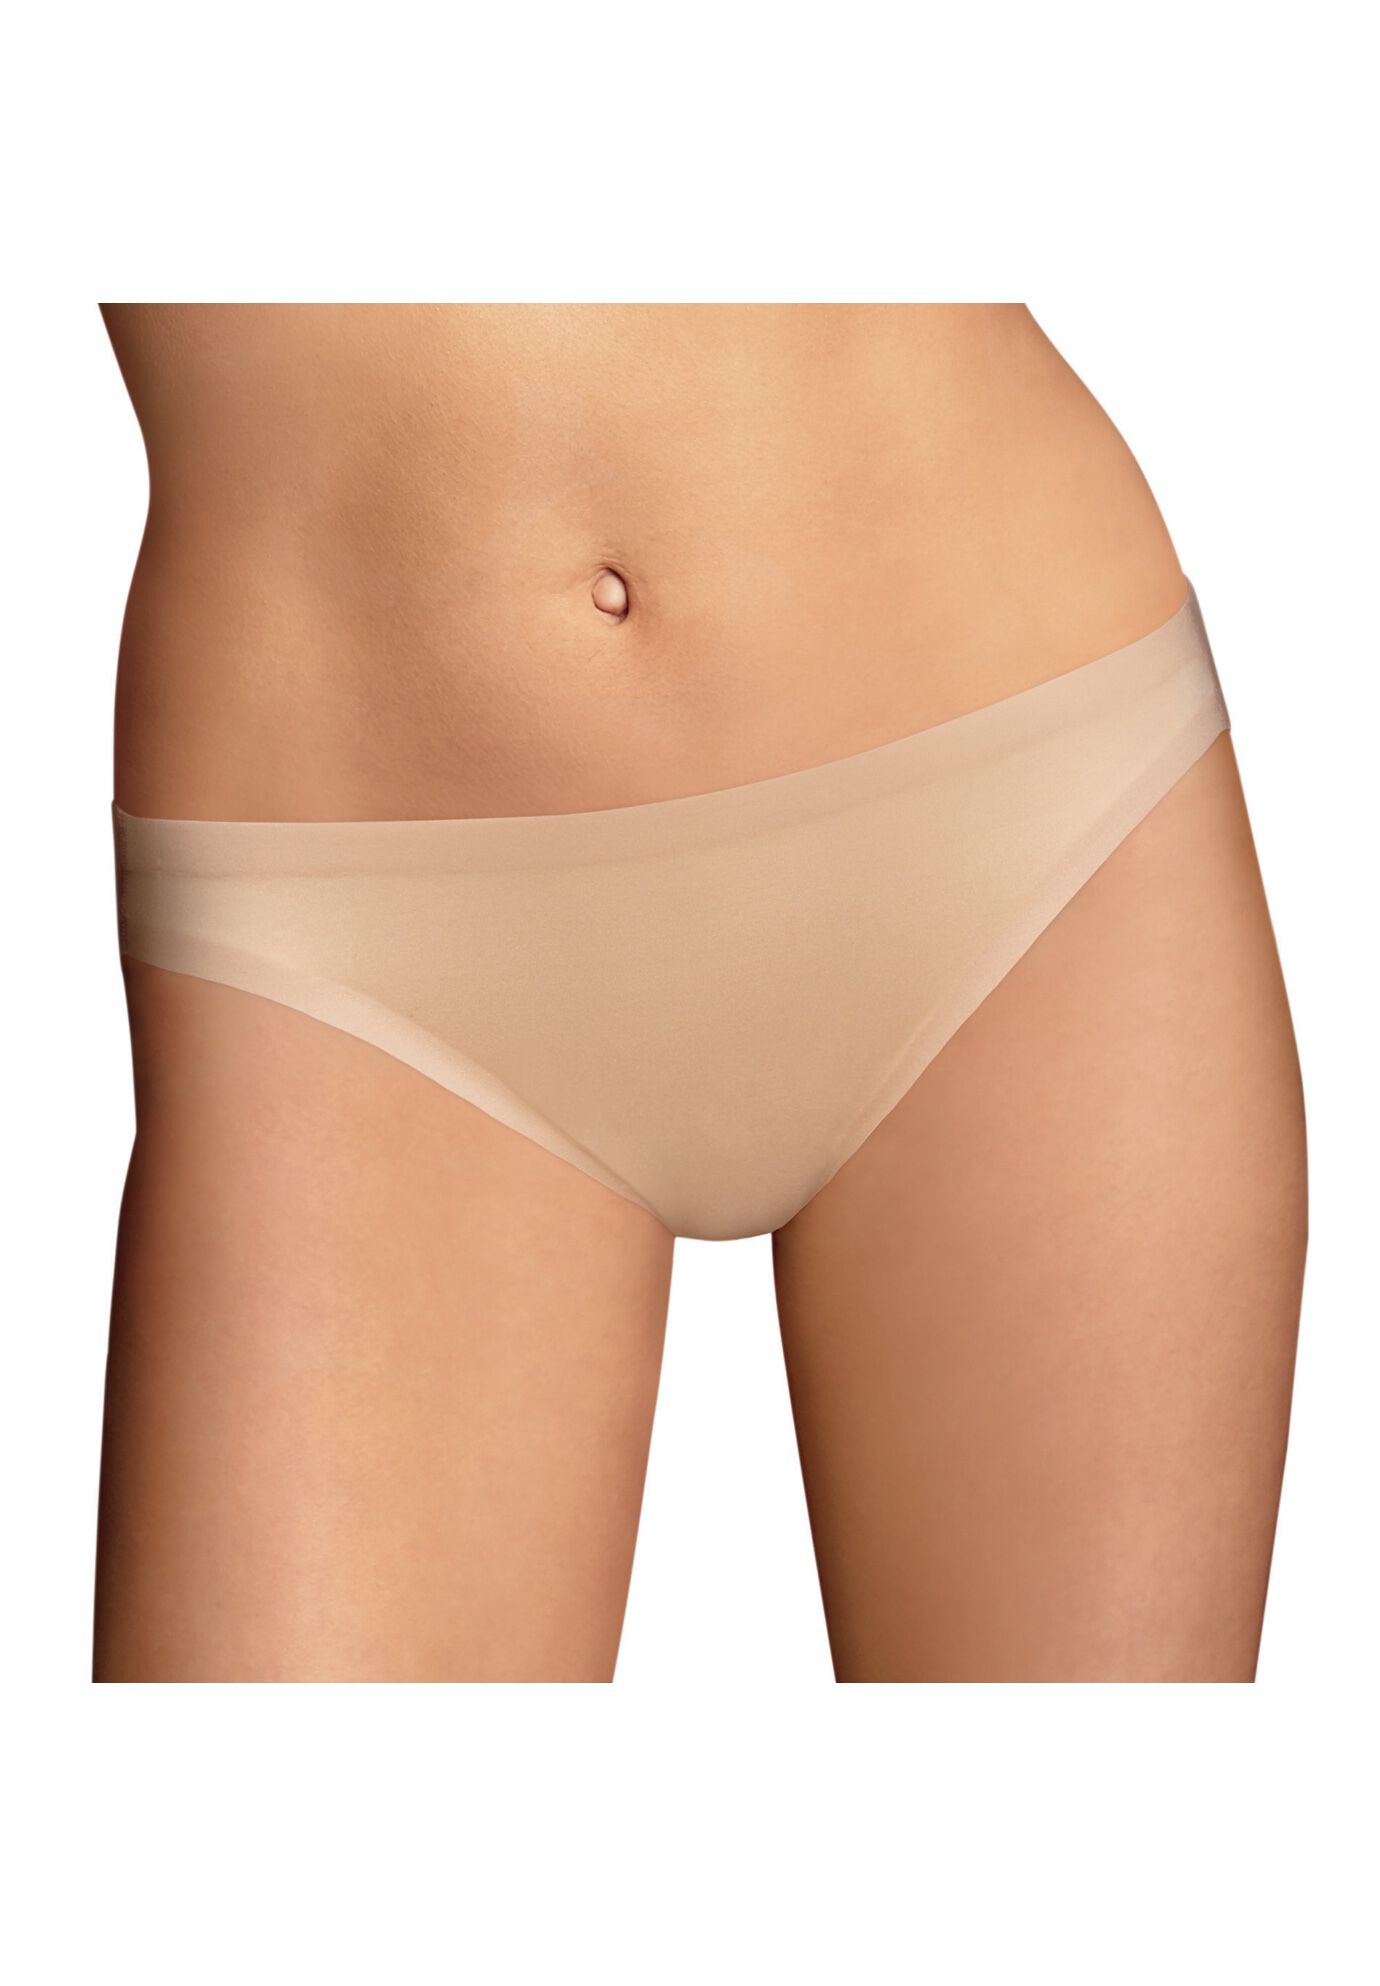 Plus Size Women's Comfort Devotion Bikini by Maidenform in Latte (Size 7)